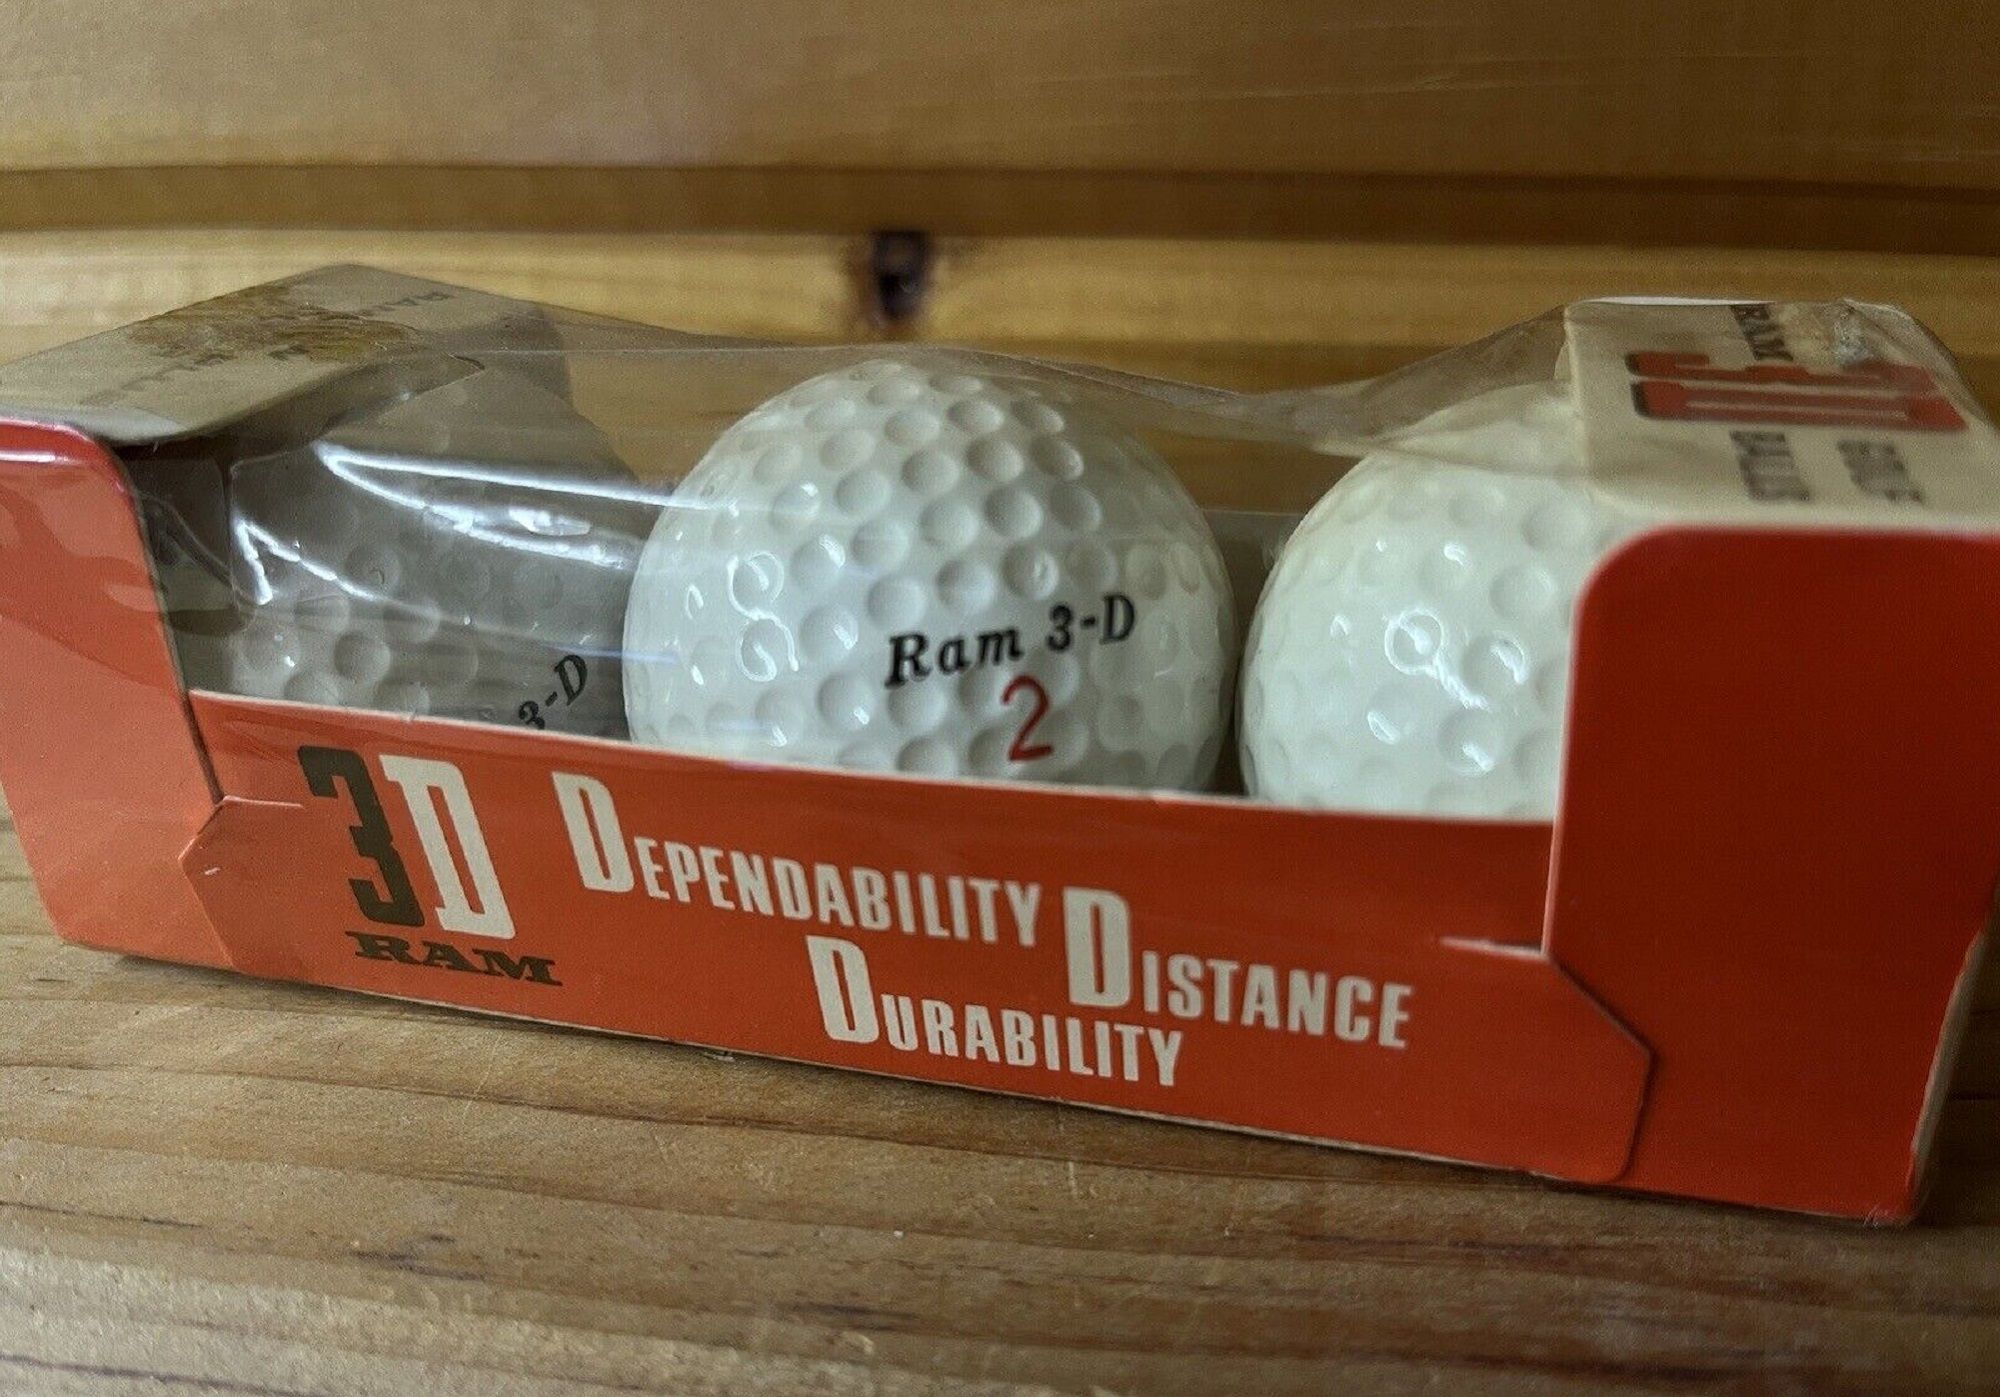 A sleeve of Ram 3D Golf Balls